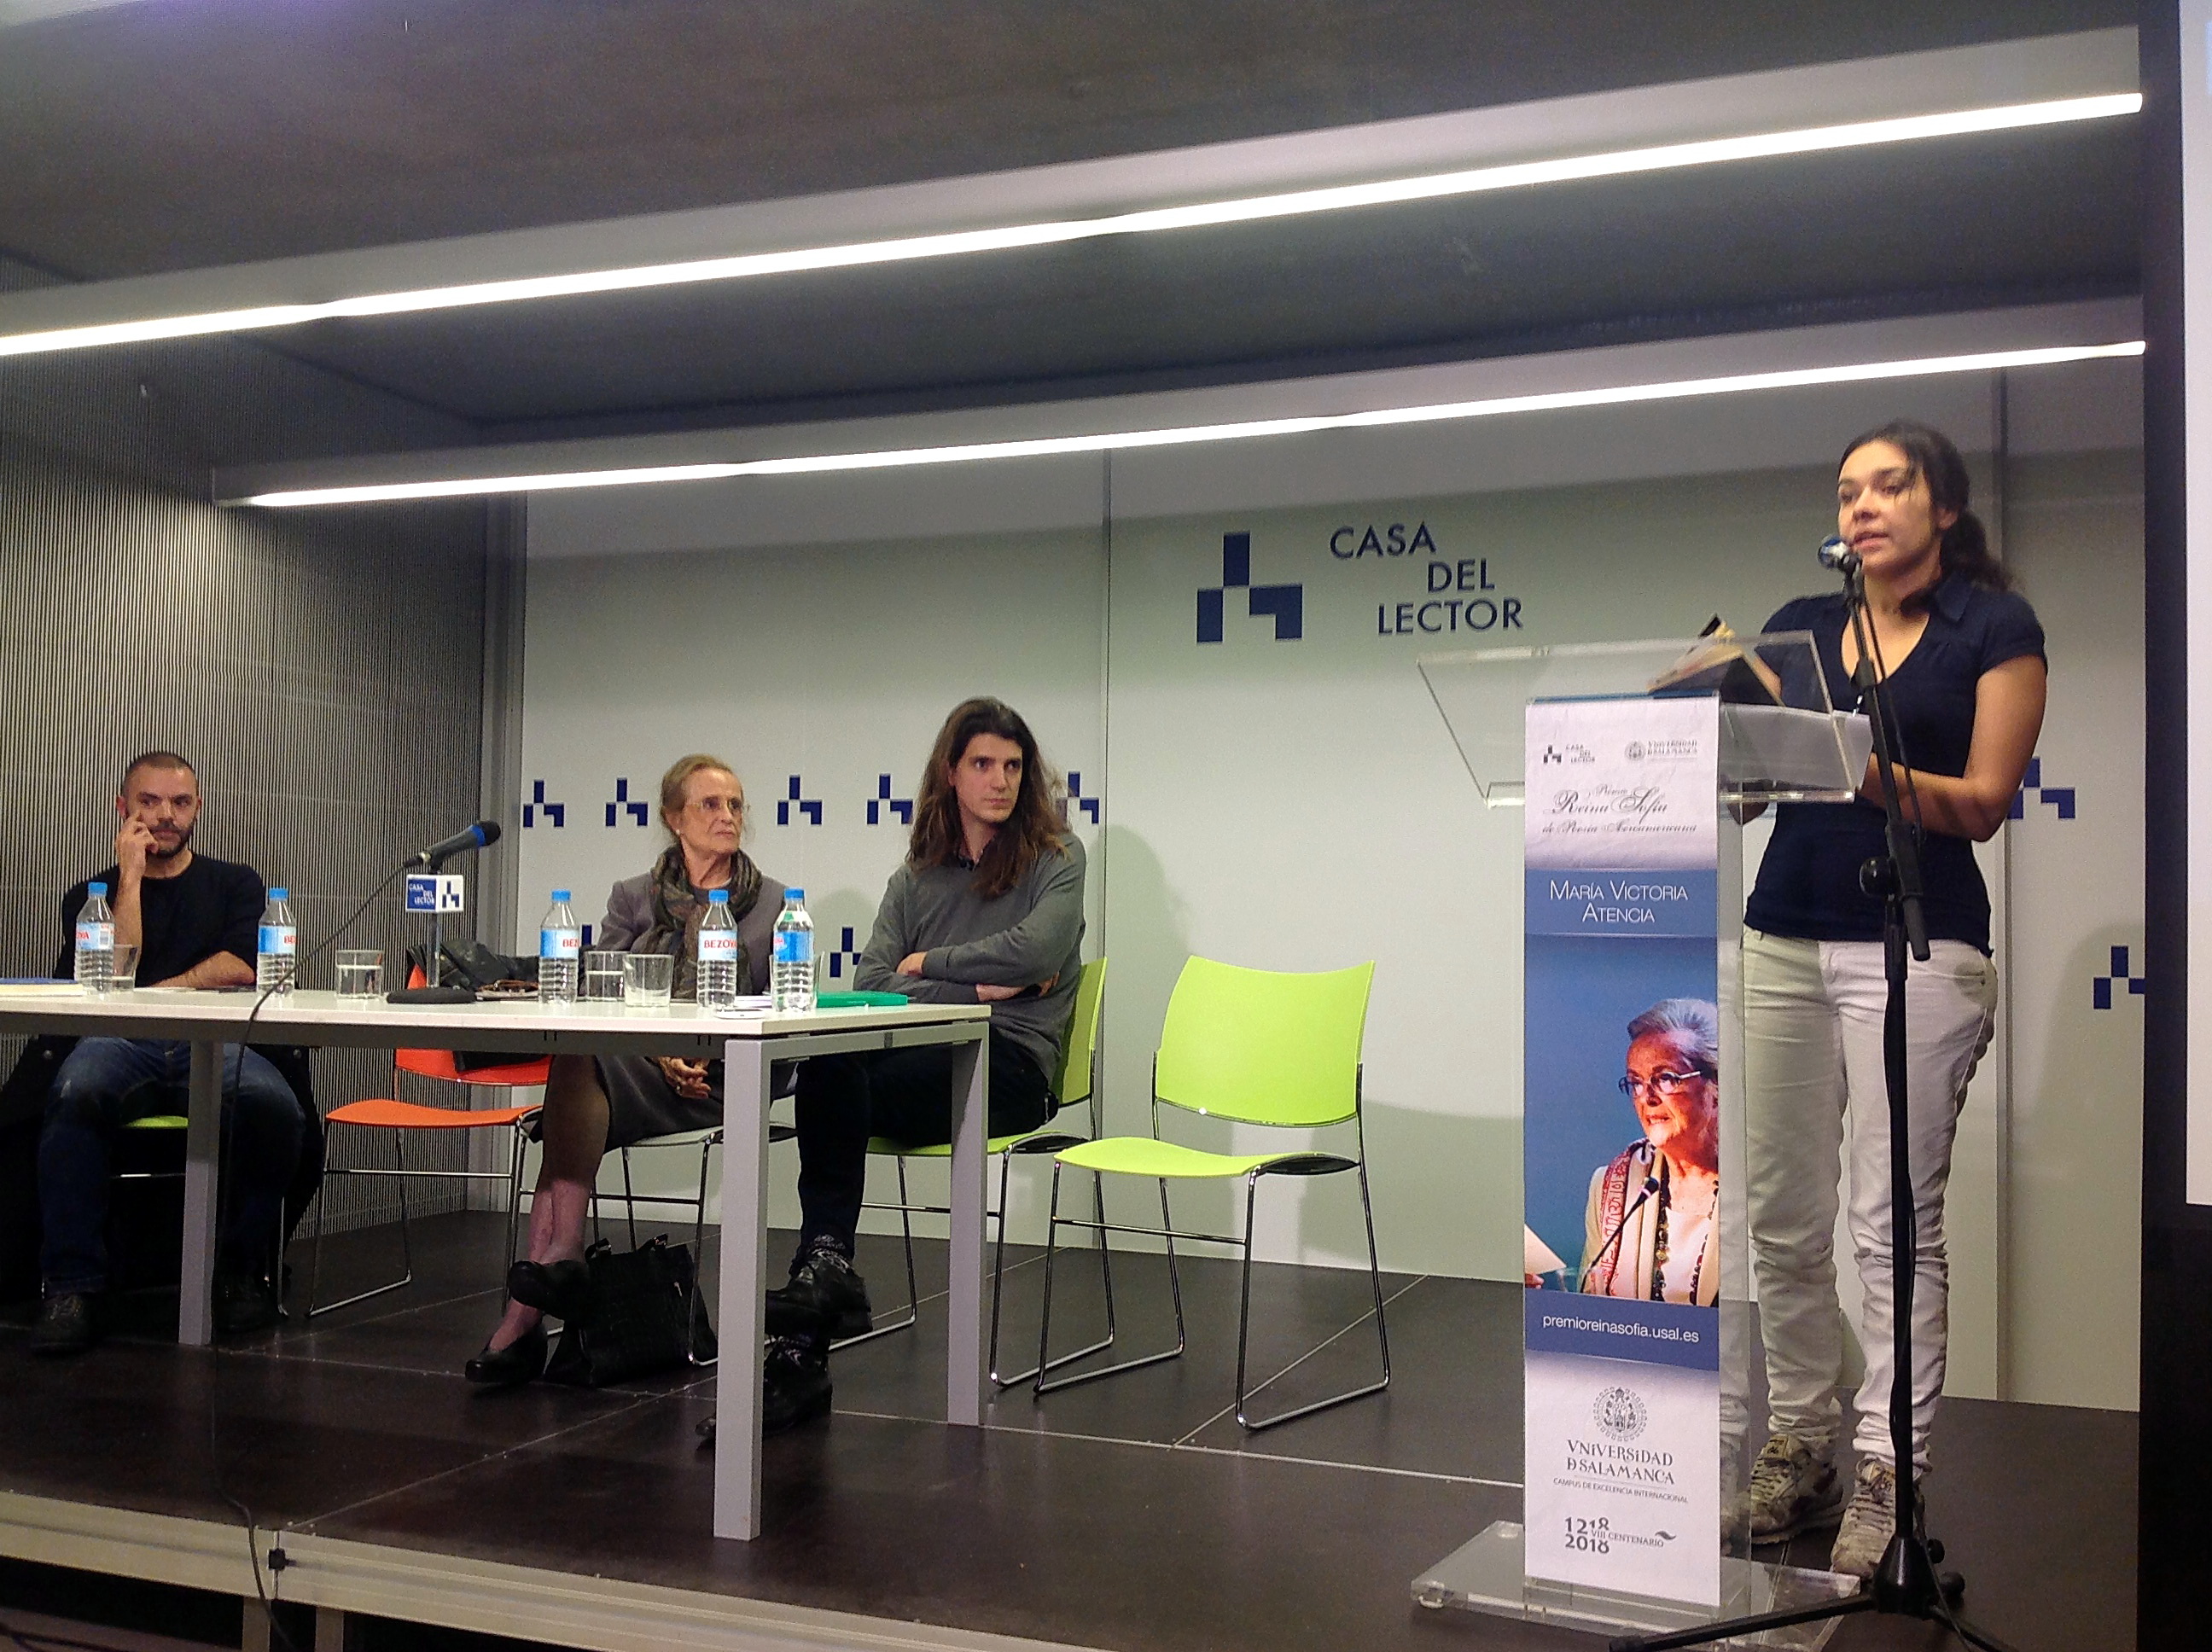 La Universidad de Salamanca reúne en Casa del Lector a tres generaciones de poetas en torno a la obra de María Victoria Atencia, XXIII Premio Reina Sofía de Poesía Iberoamericana